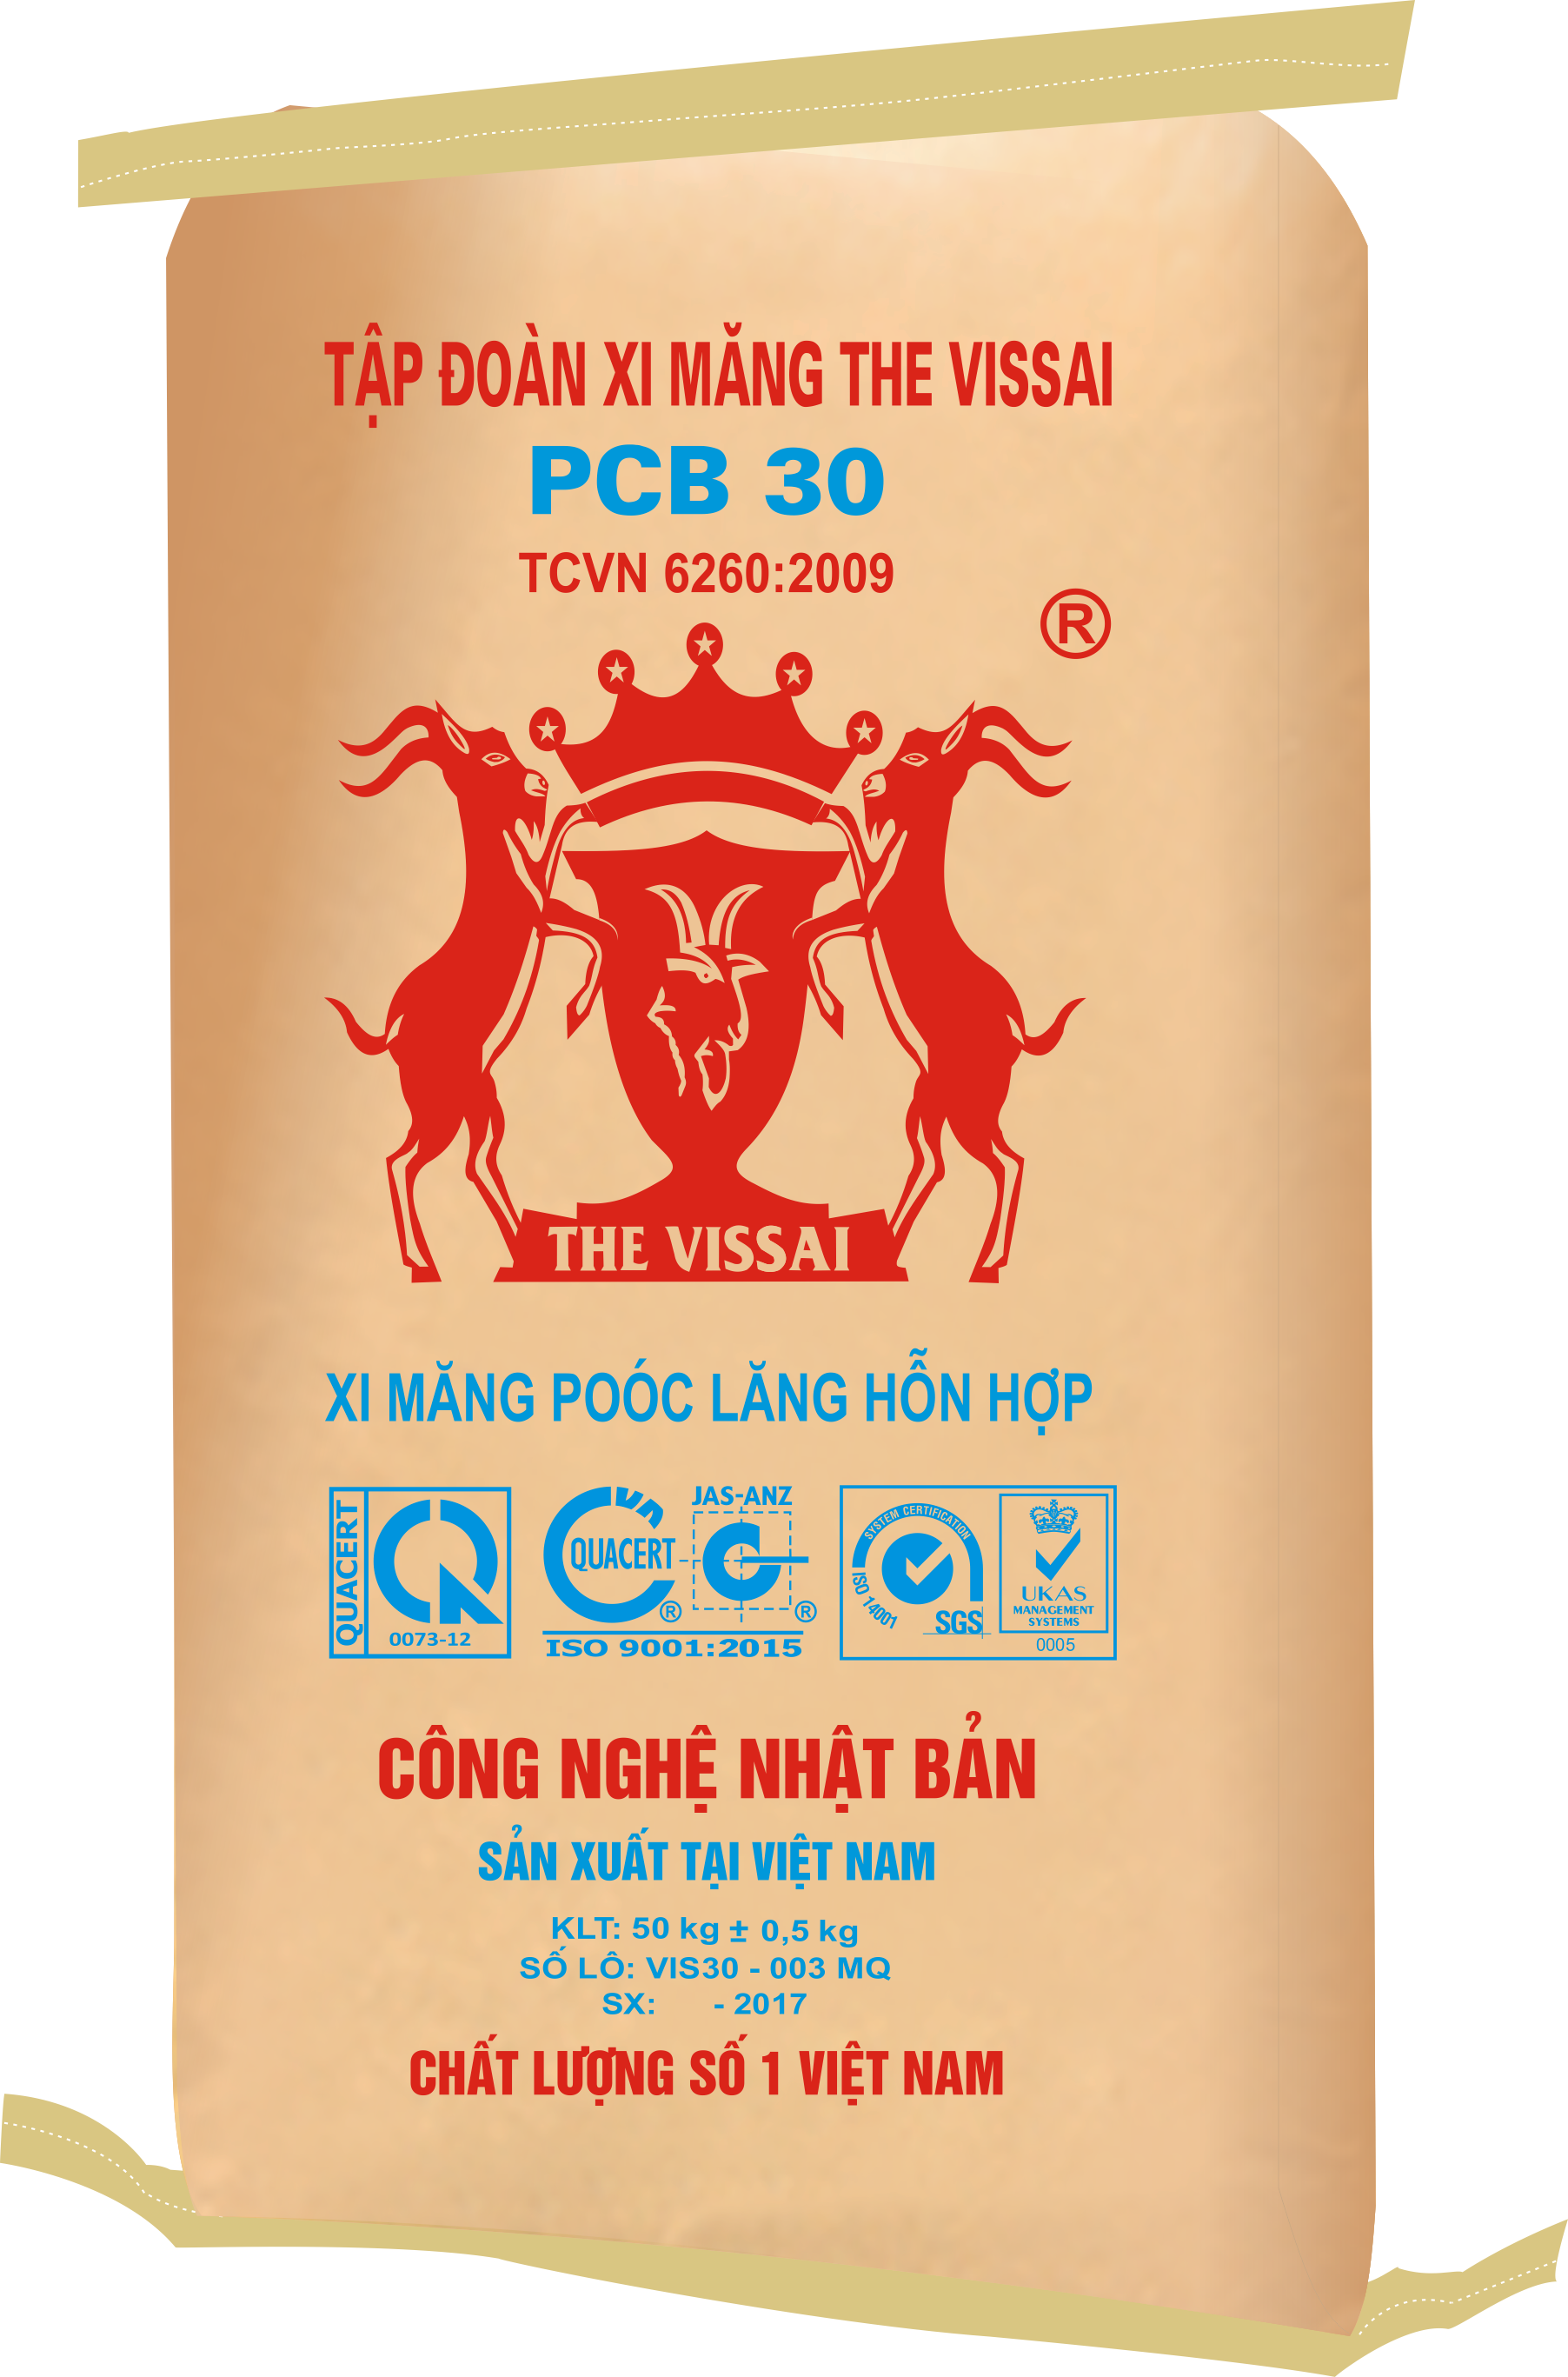 Xi Măng The Vissai PCB 30